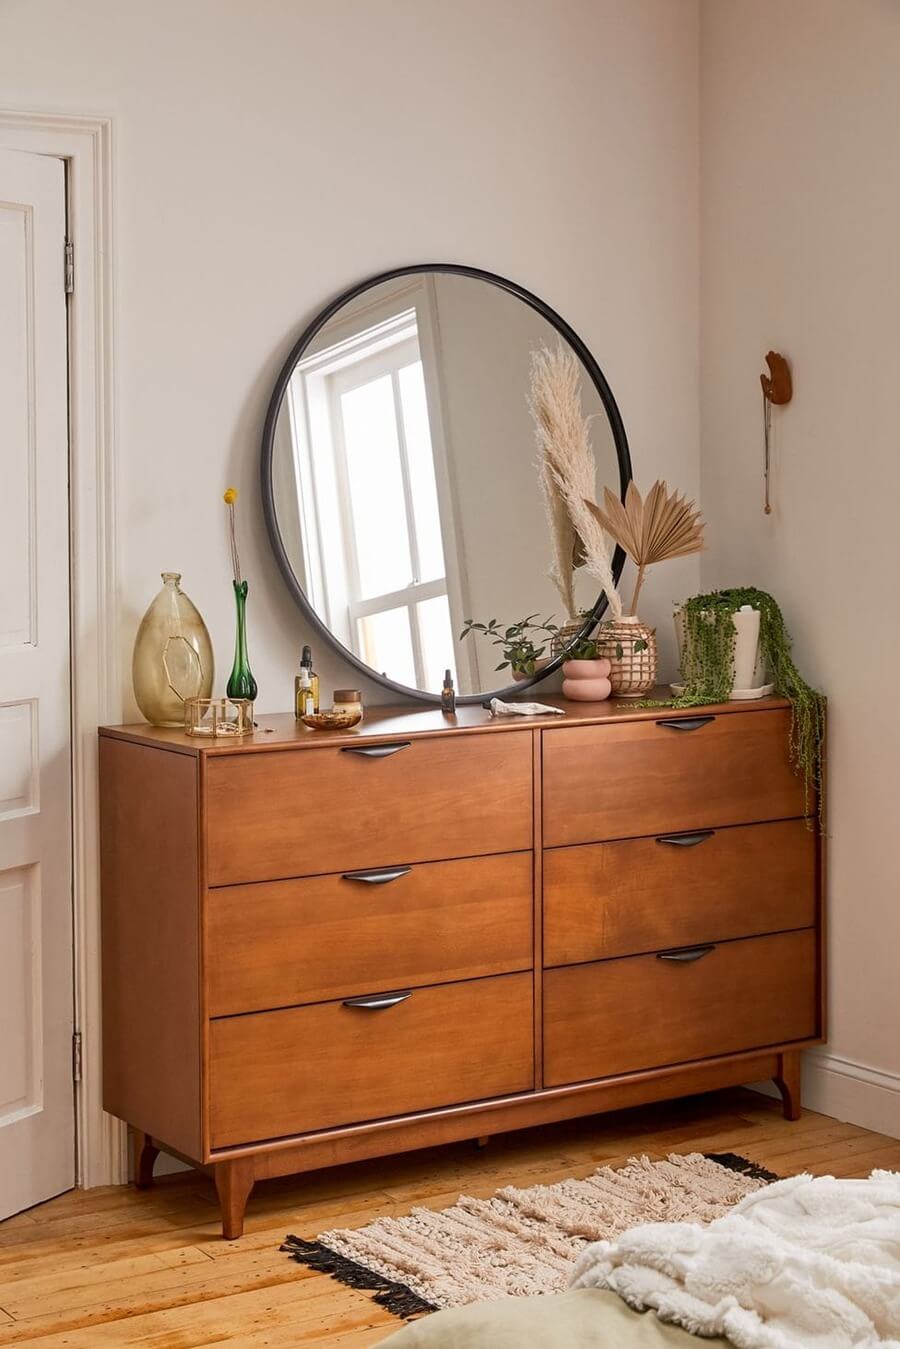 Foto de un dormitorio con una cómoda de madera con jarrones, plantas, otras decoraciones y un gran espejo redondo con marco negro apoyado sobre él. 